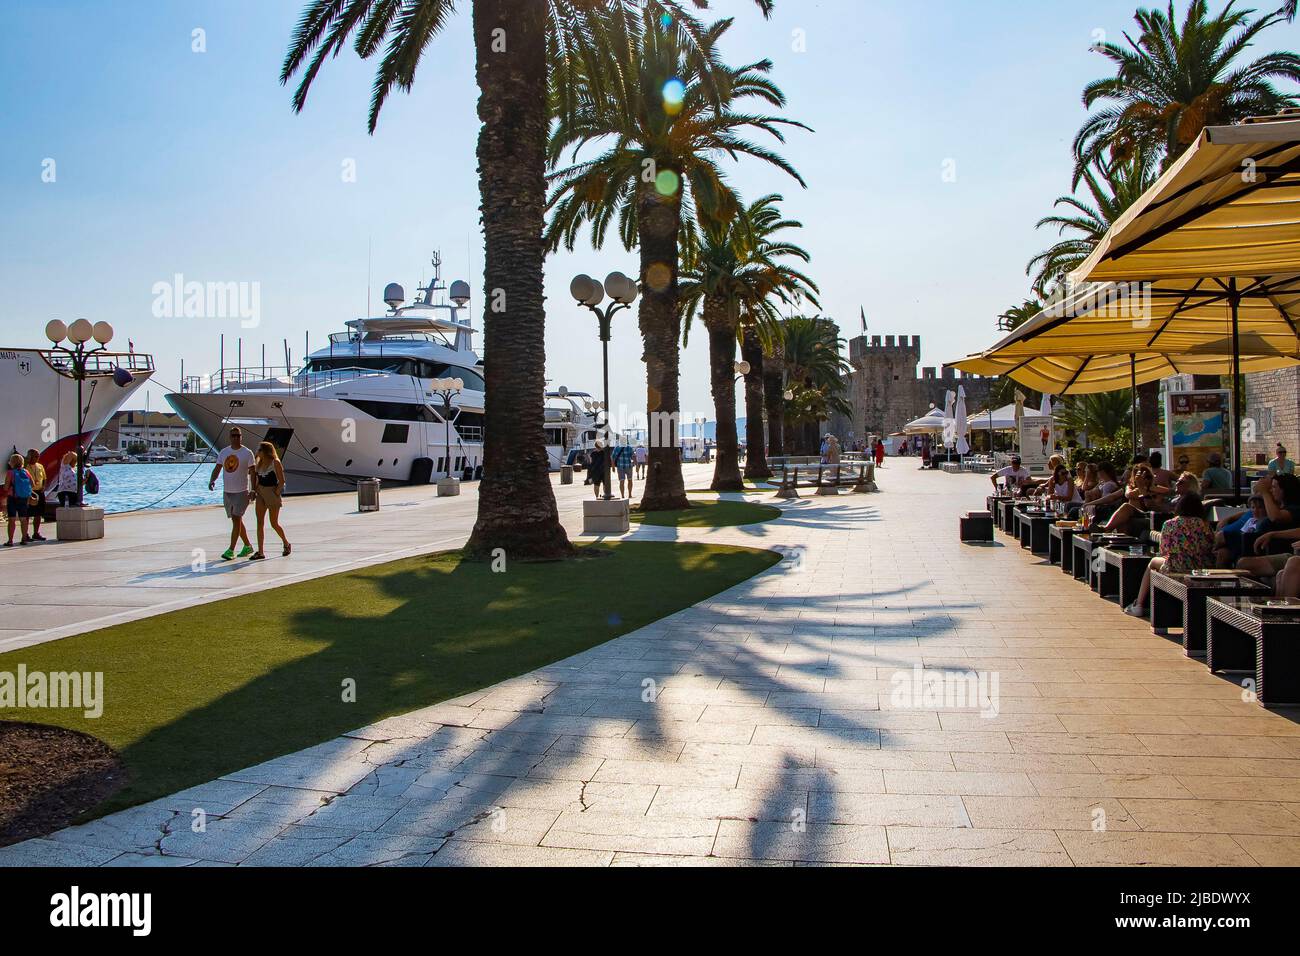 Sunny promenade along the pier of old Venetian town, Trogir, Croatia. Stock Photo